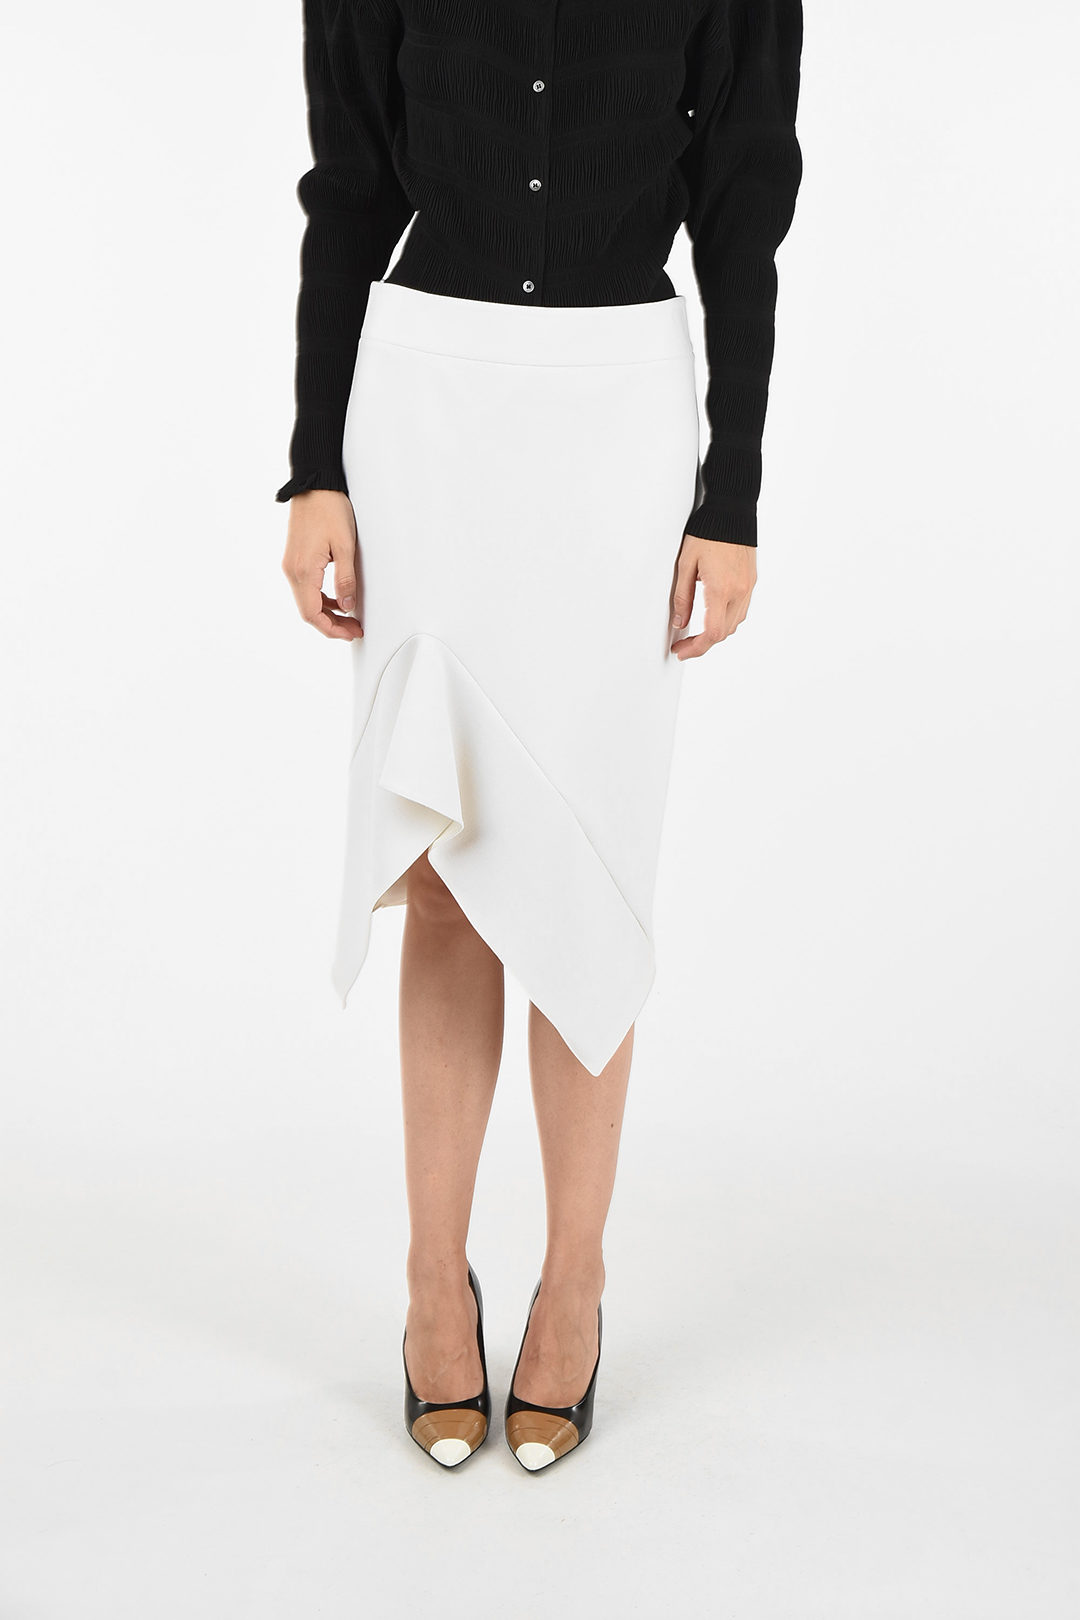 Tom Ford asymmetrical skirt women - Glamood Outlet